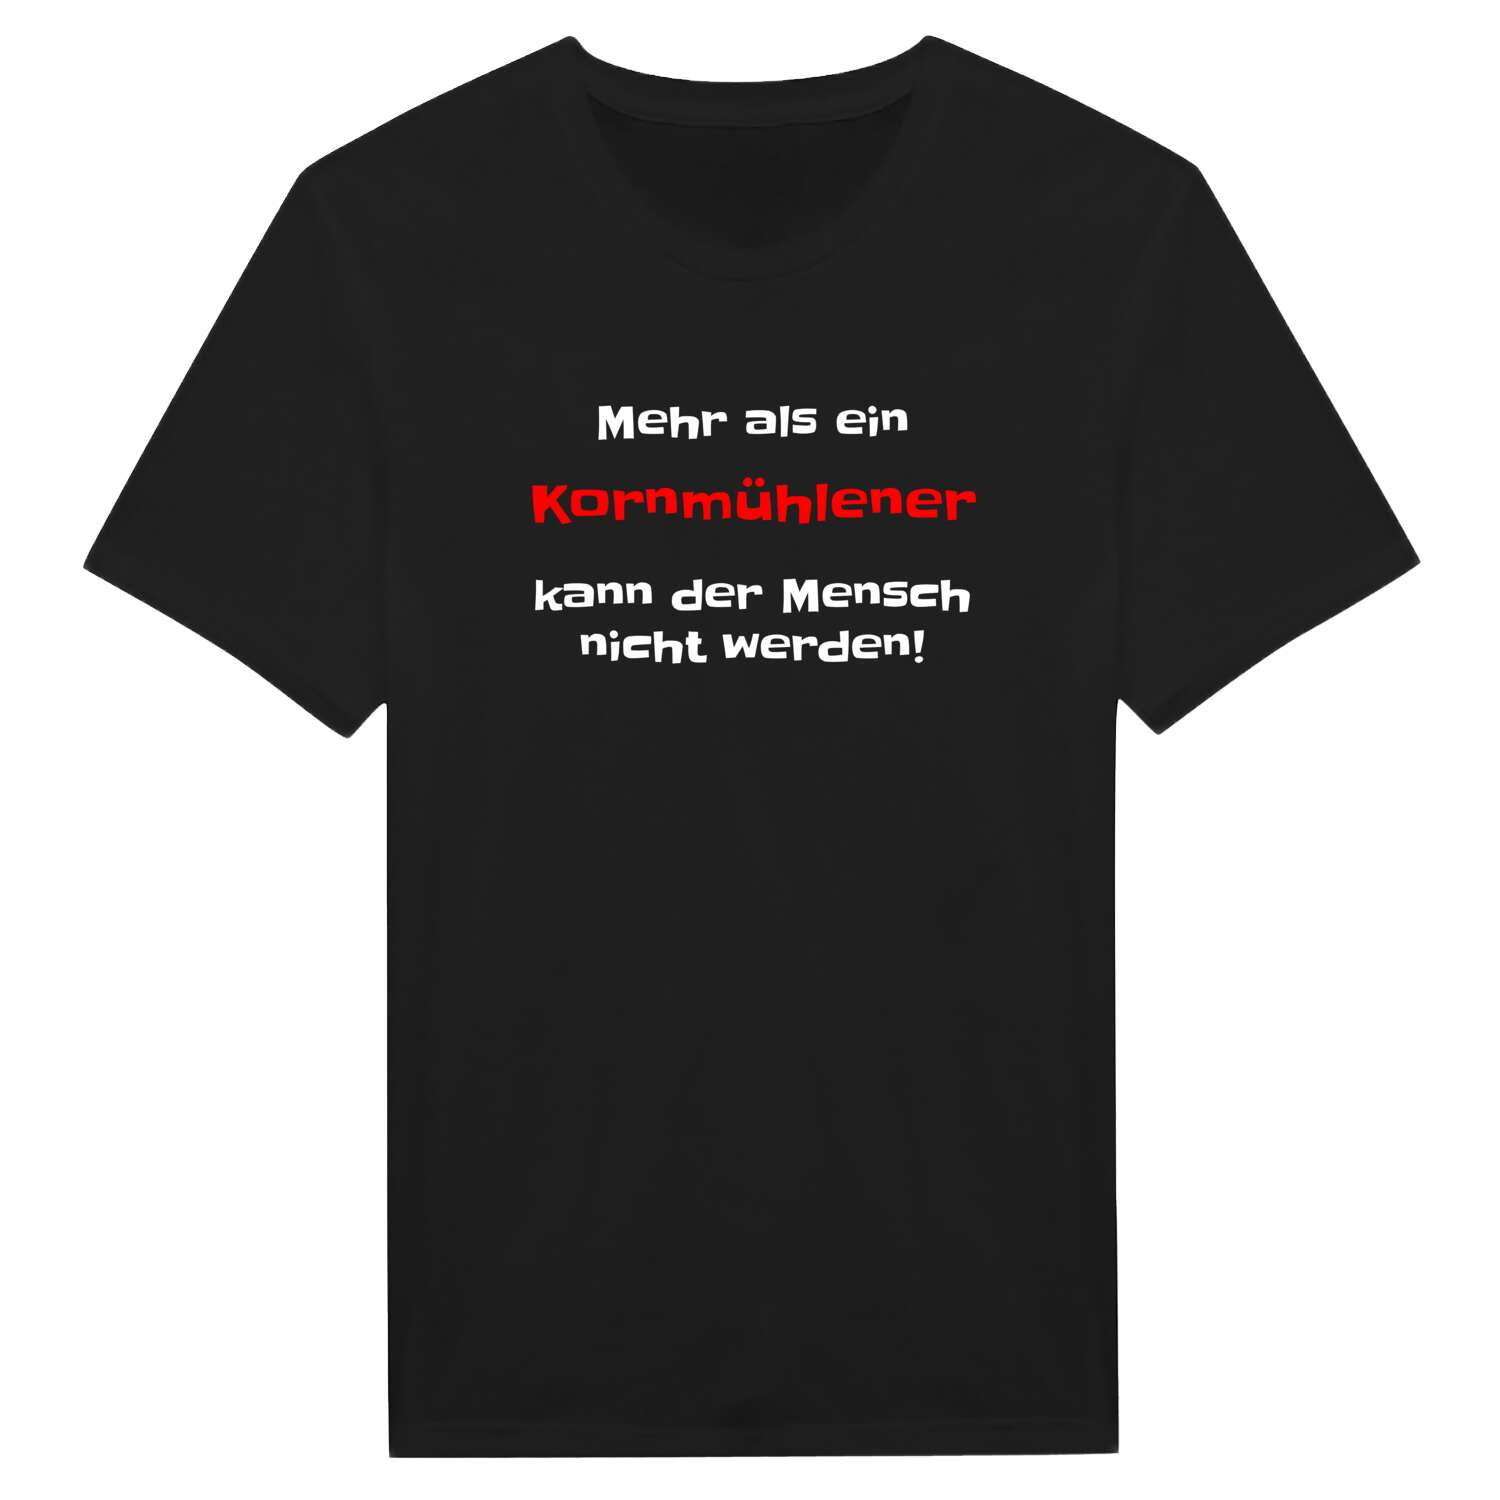 Kornmühle T-Shirt »Mehr als ein«